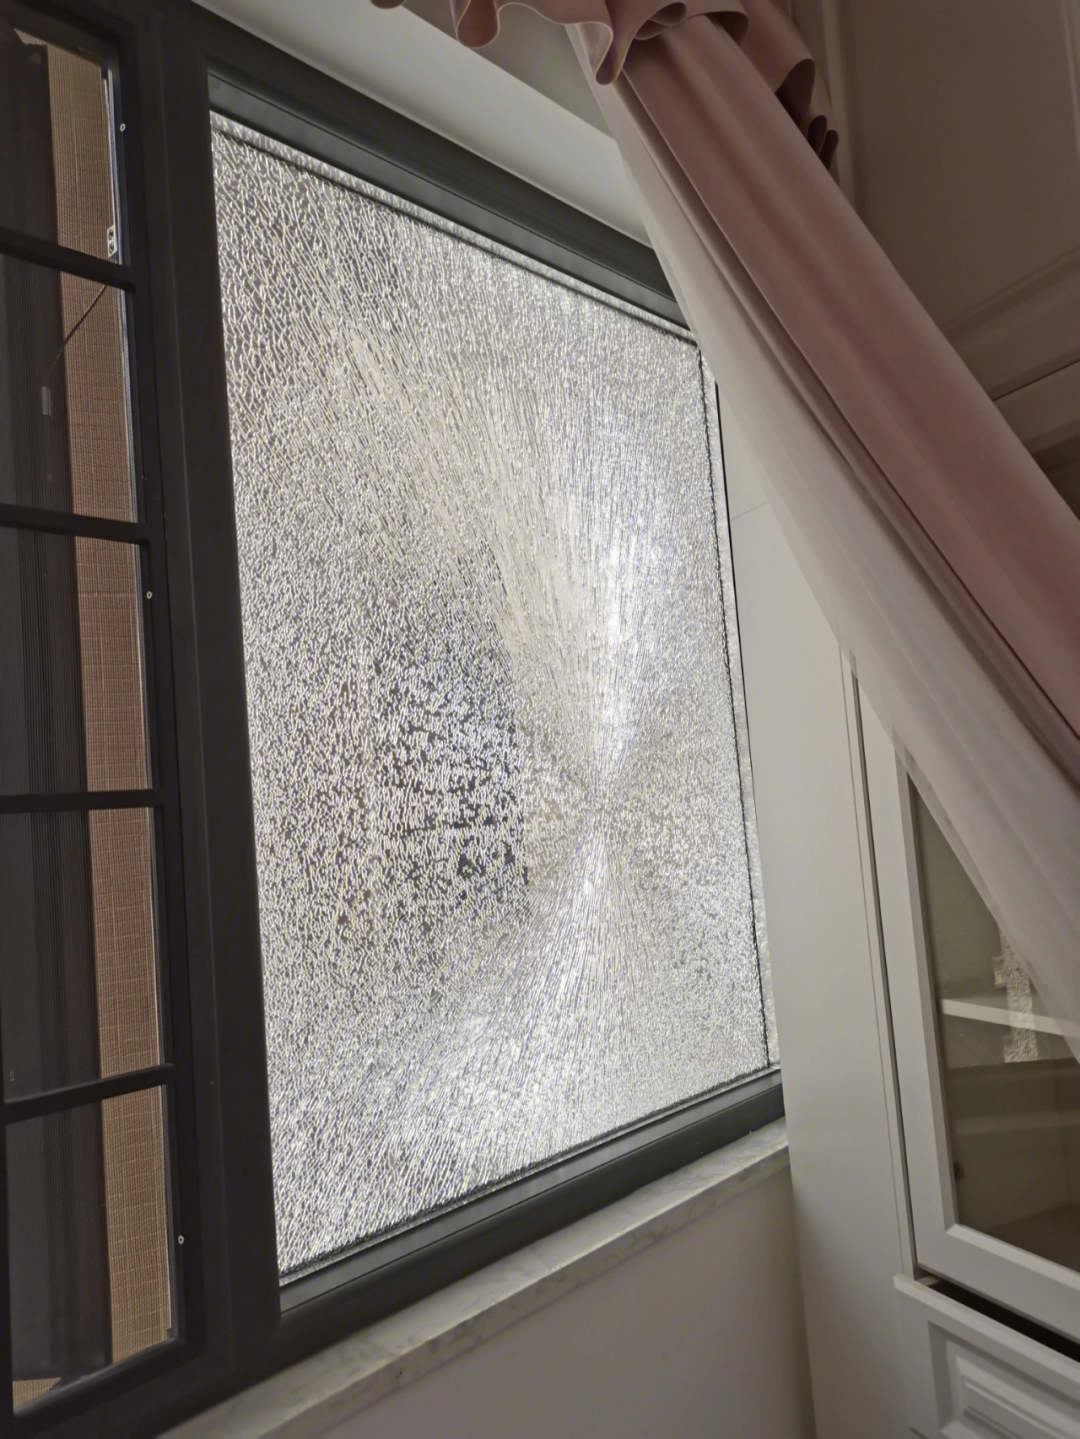 防盗窗玻璃裂了